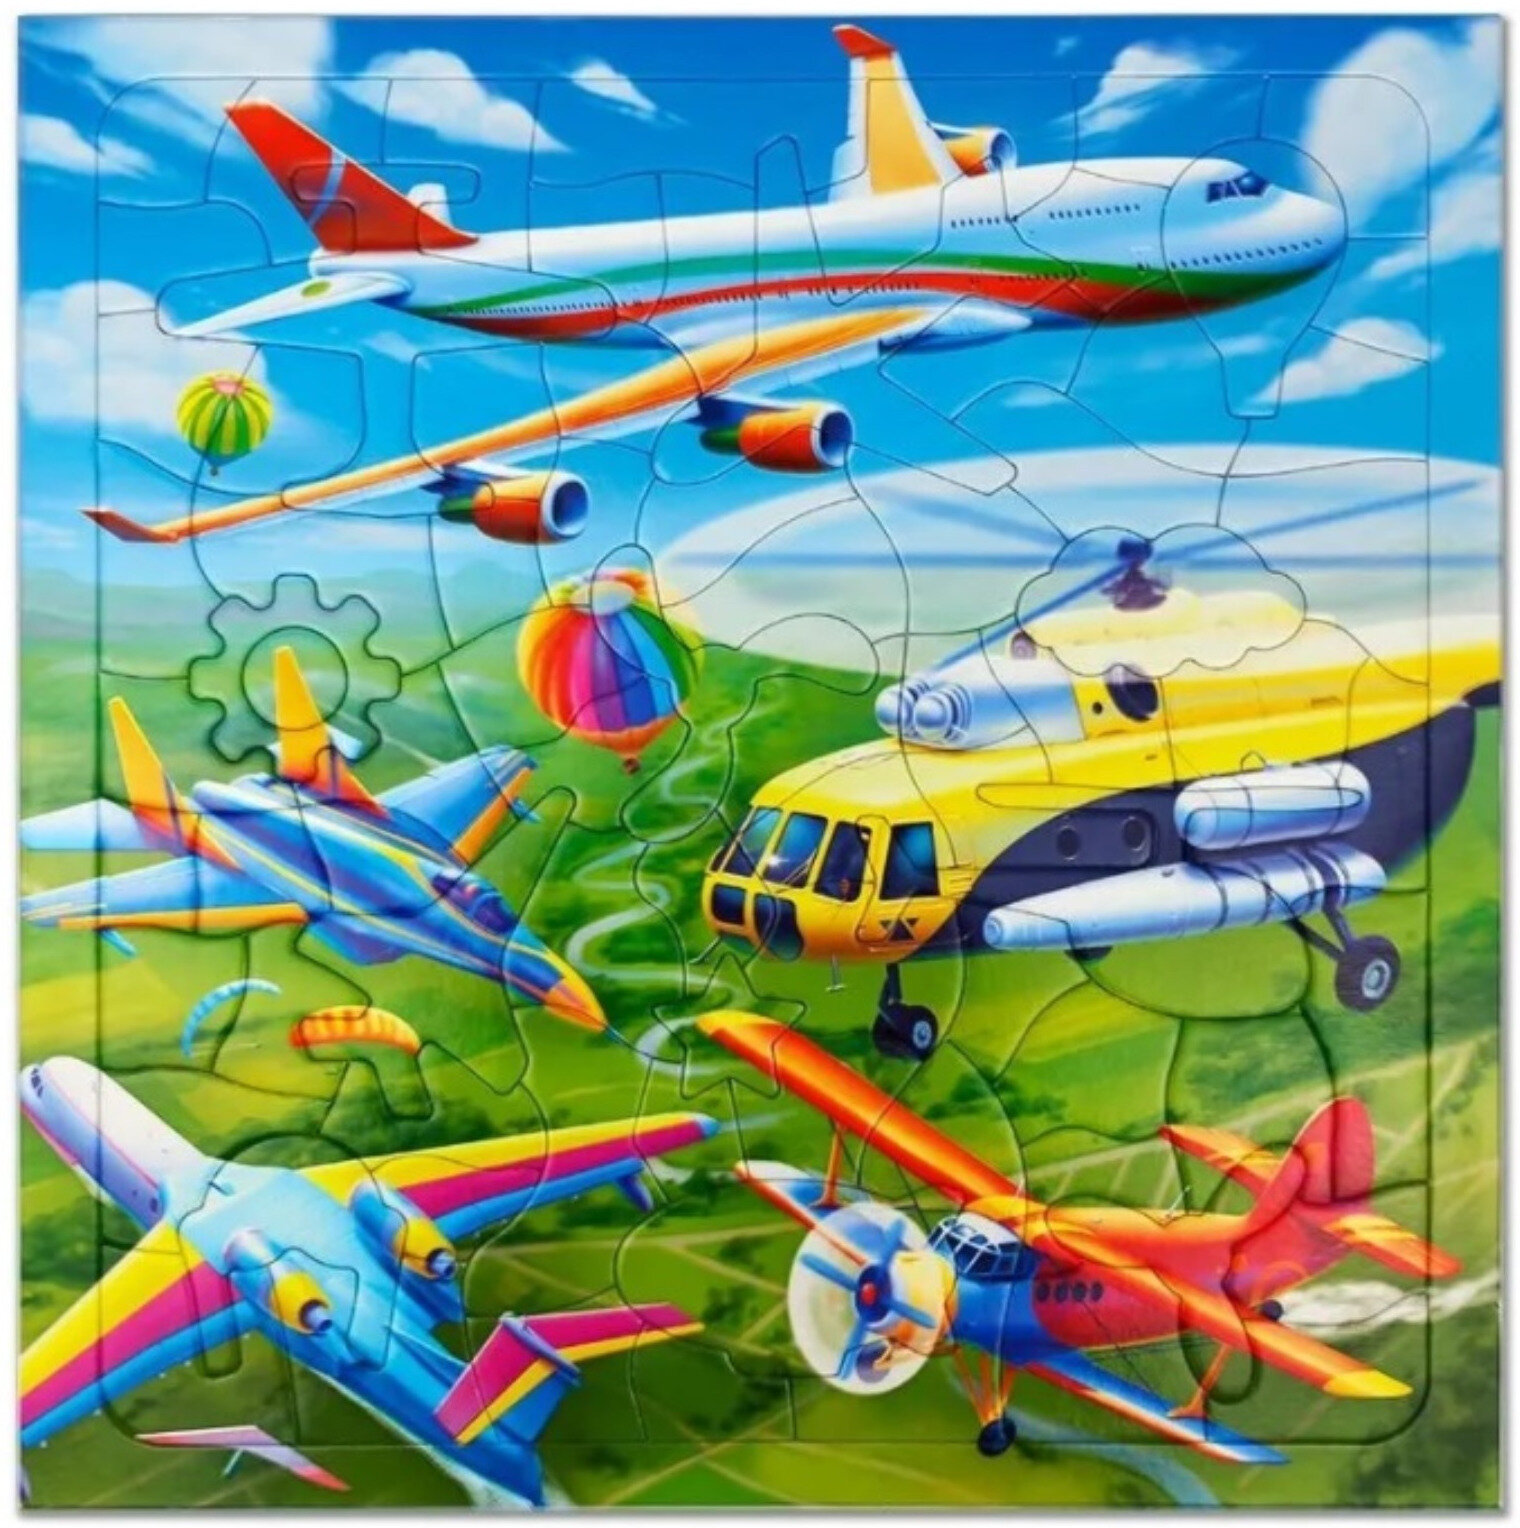 Фигурный детский пазл "Самолёты" на подложке и с дополненной реальностью, головоломка из 80 уникальных деталей